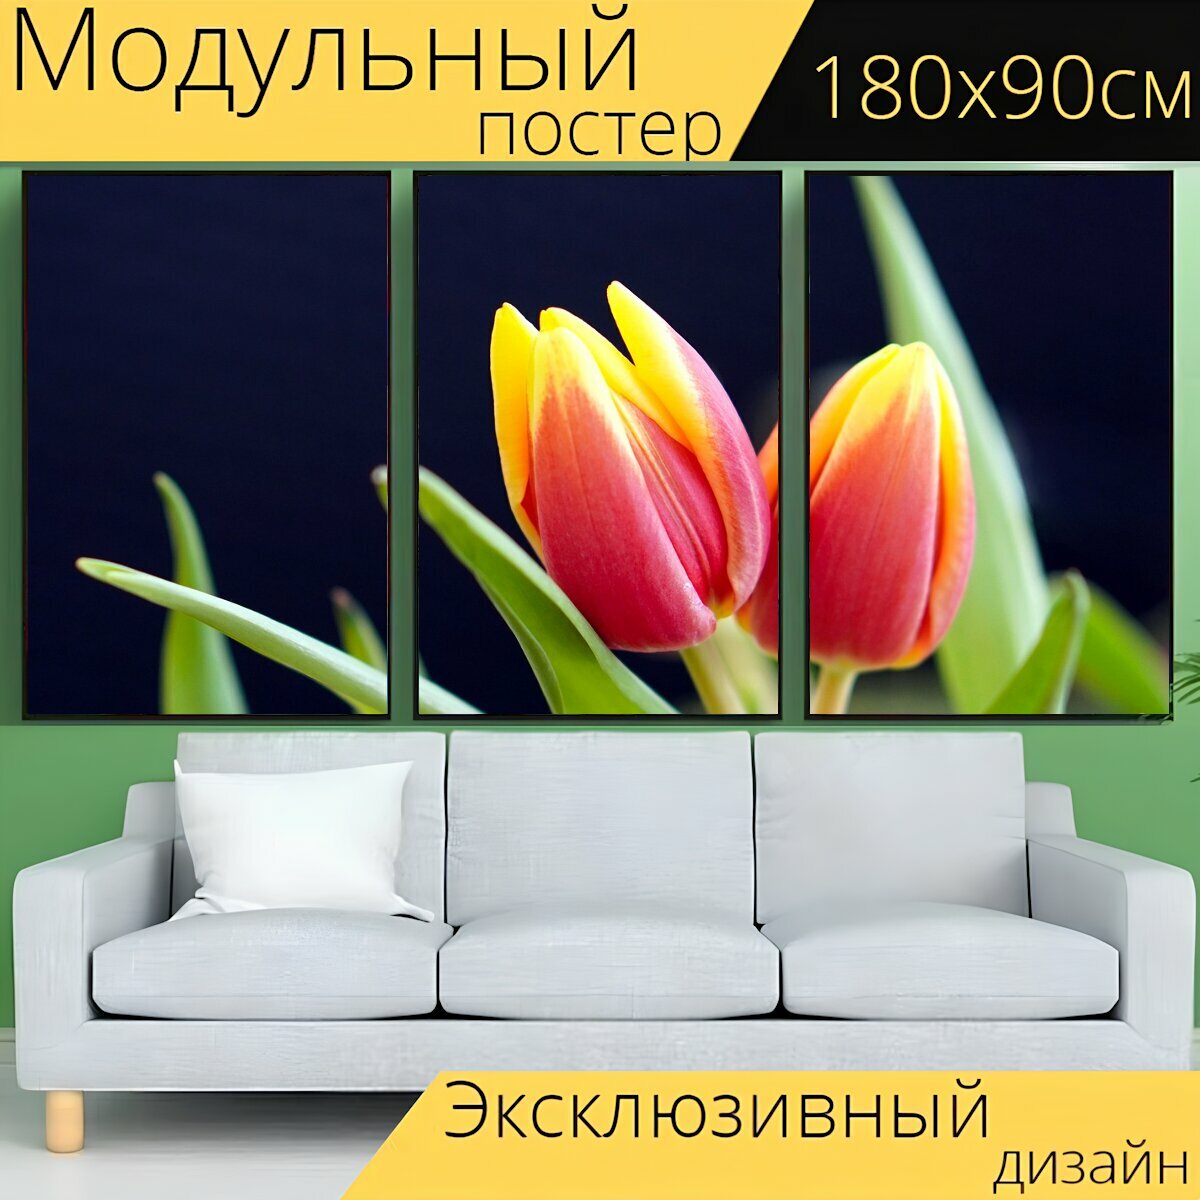 Модульный постер "Тюльпаны, цвести, цветок" 180 x 90 см. для интерьера